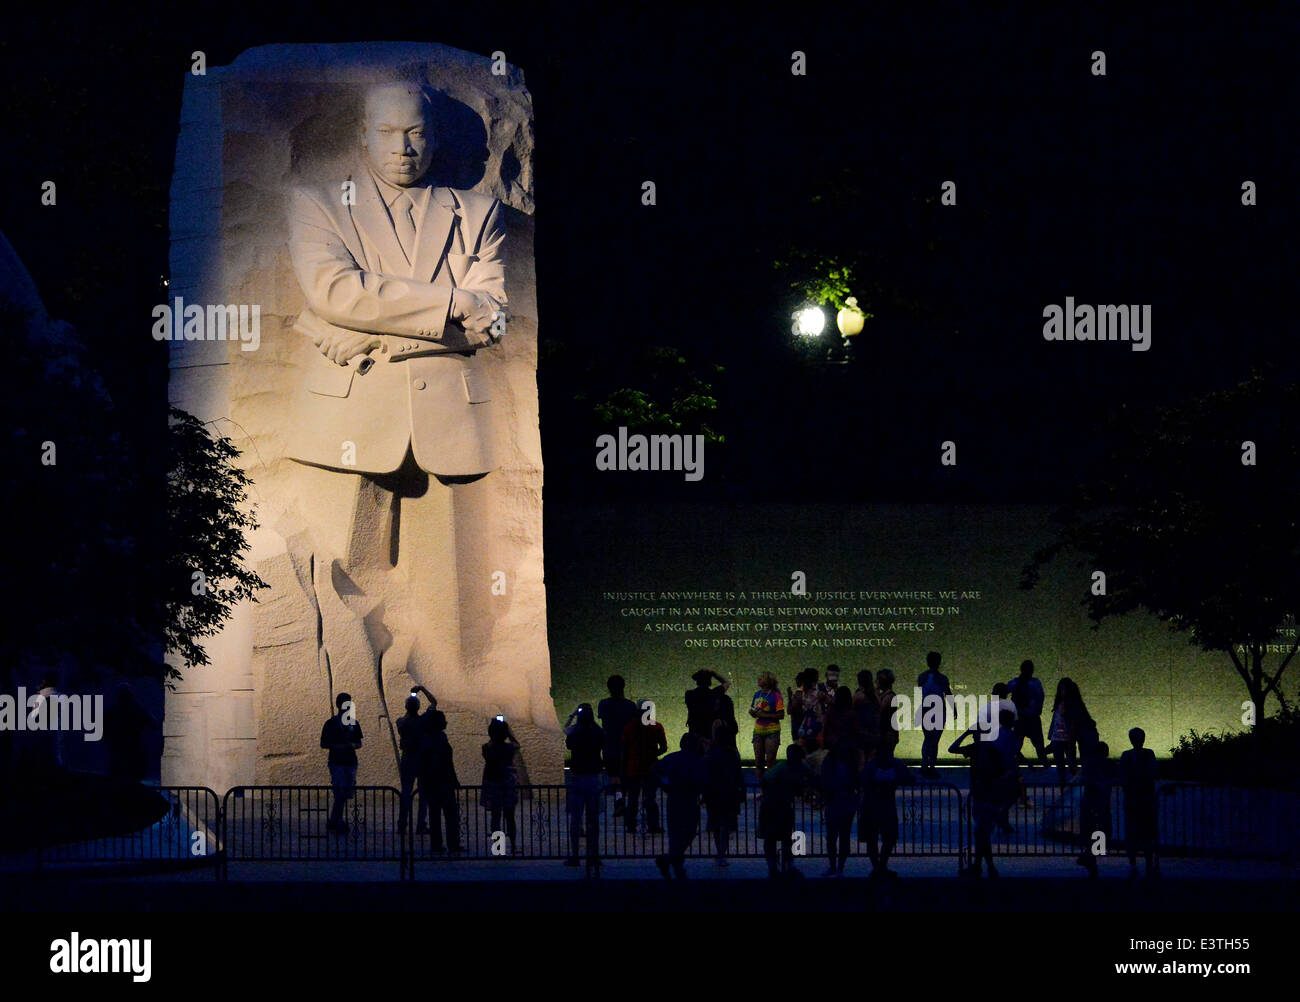 Les touristes se rassemblent la nuit pour visiter le mémorial Martin Luther King Jr., 18 juin 2014 à Washington, D.C. Banque D'Images